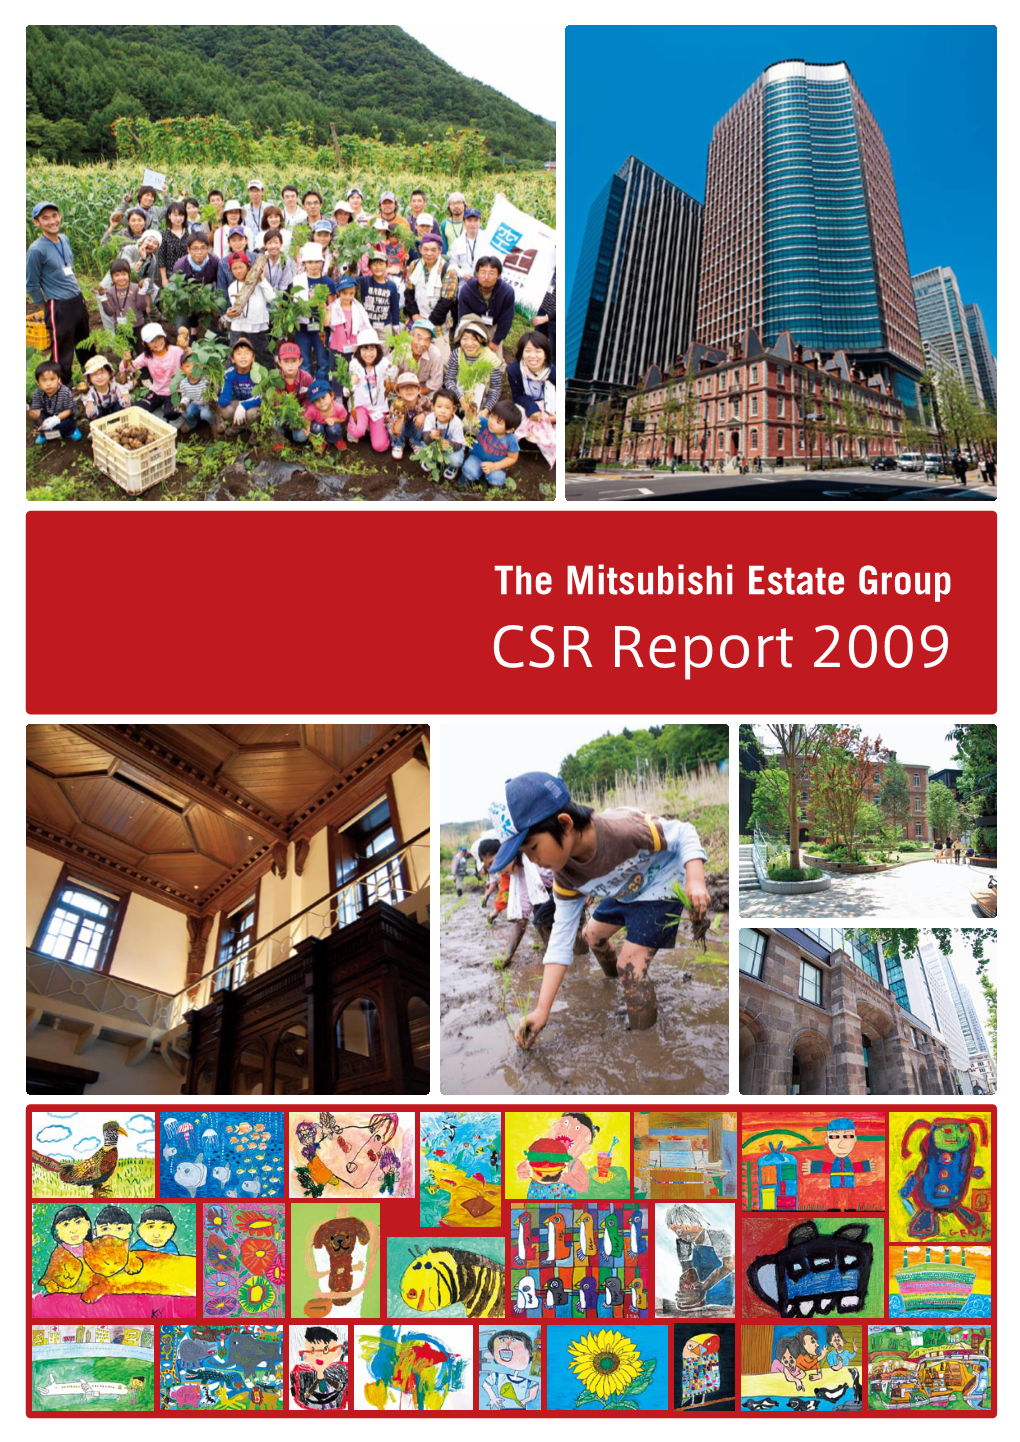 The Mitsubishi Estate Group CSR Report 2009